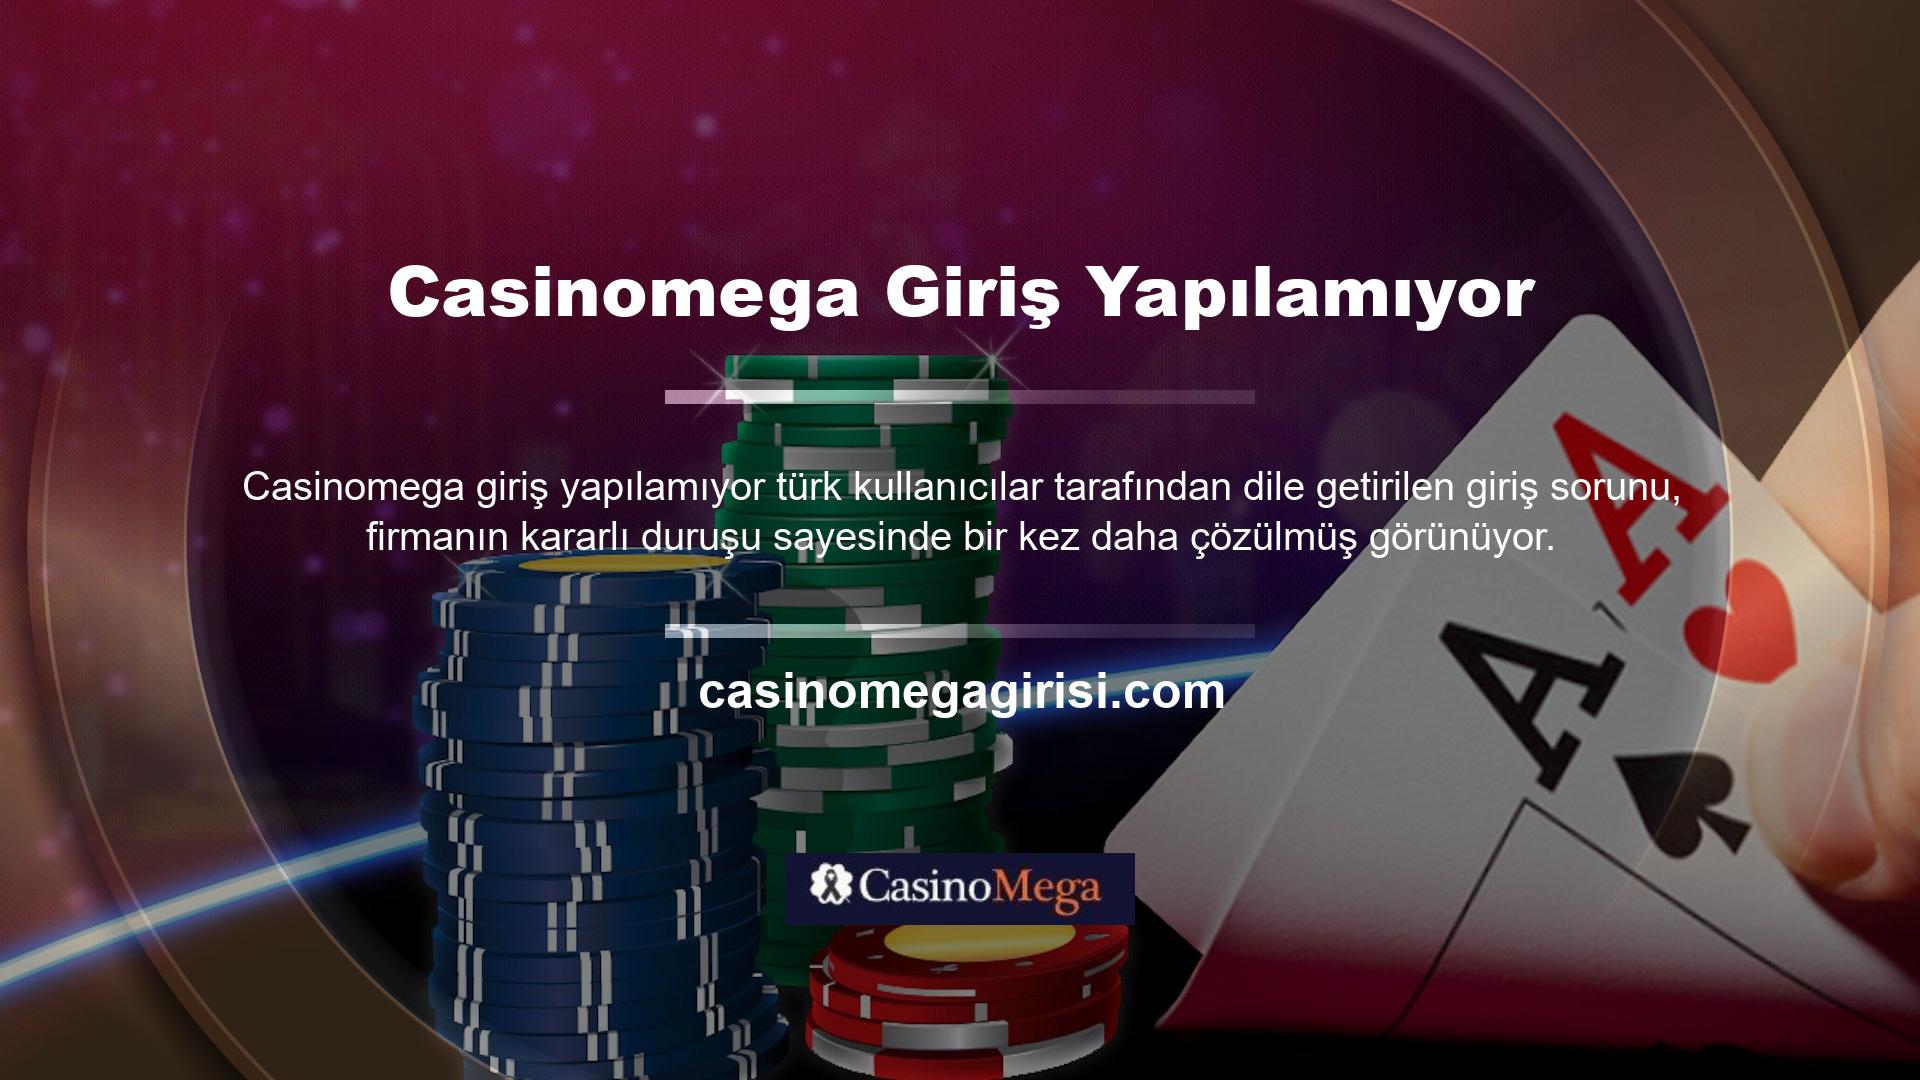 Türk hukukuna göre Casinomega bağlı olduğu ticaret sitelerinin kapatılması gibi bir uygulama bulunmamaktadır